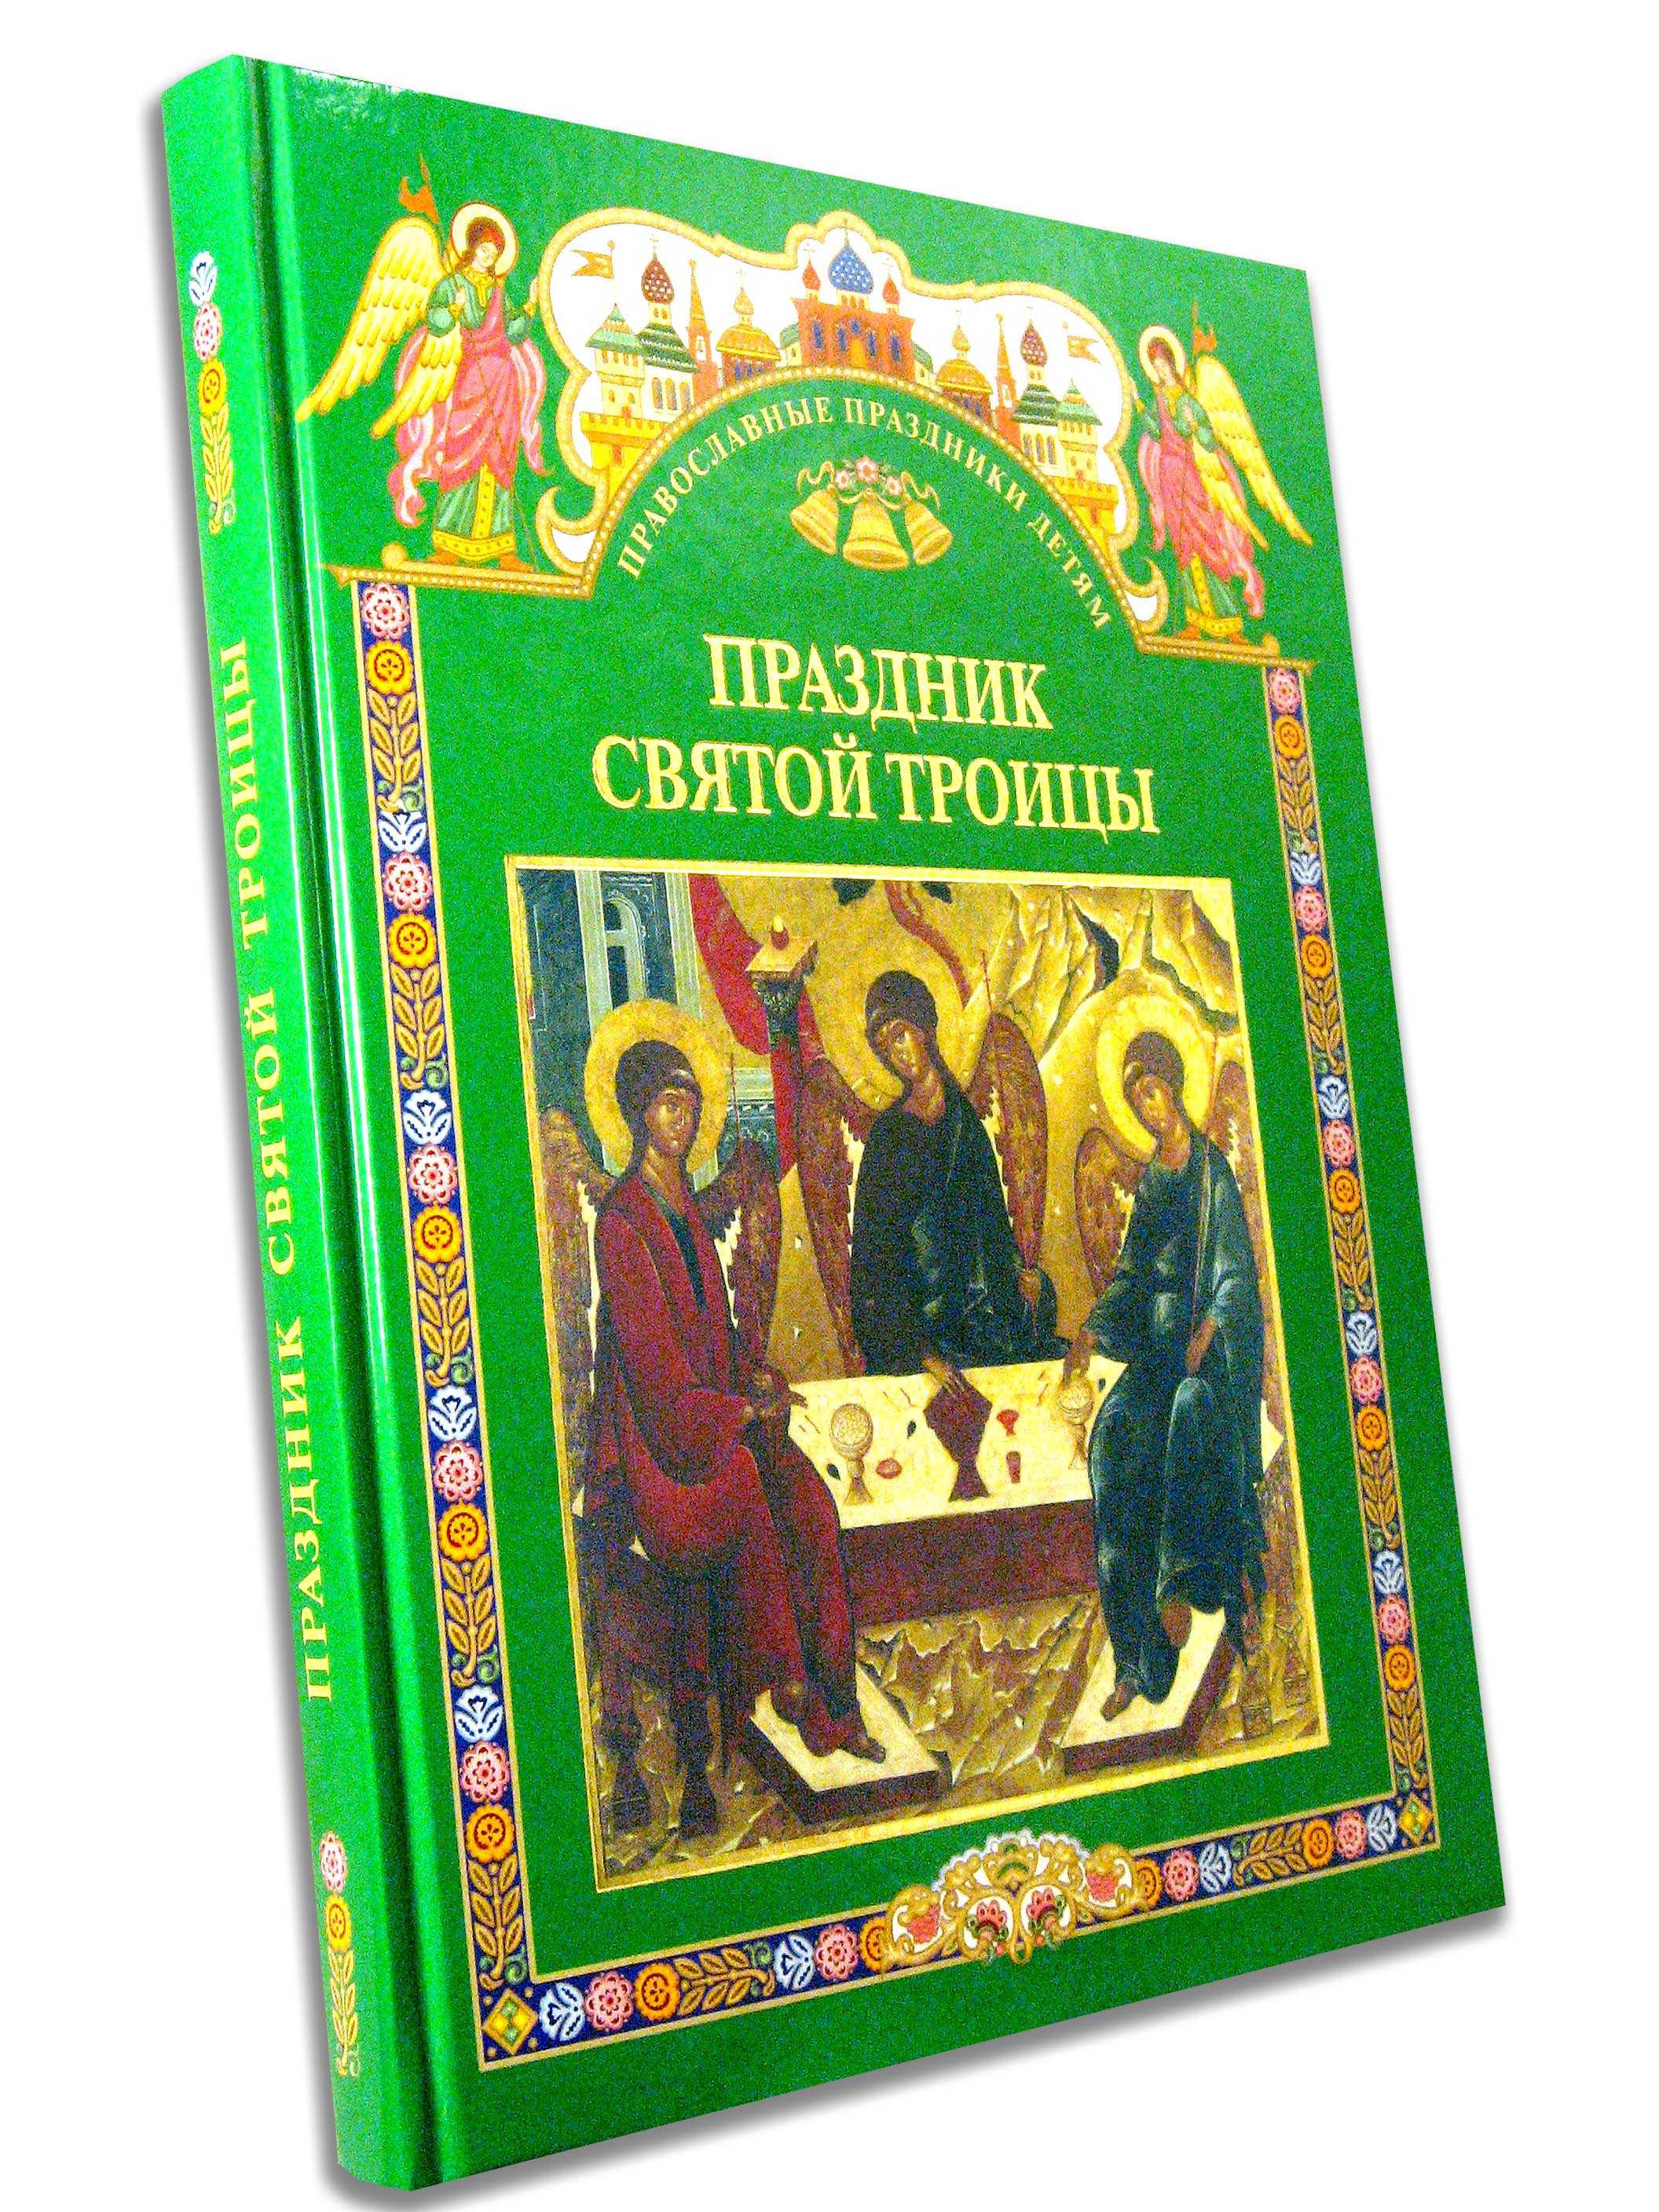 Детям о празднике святой троицы - справочник педагога